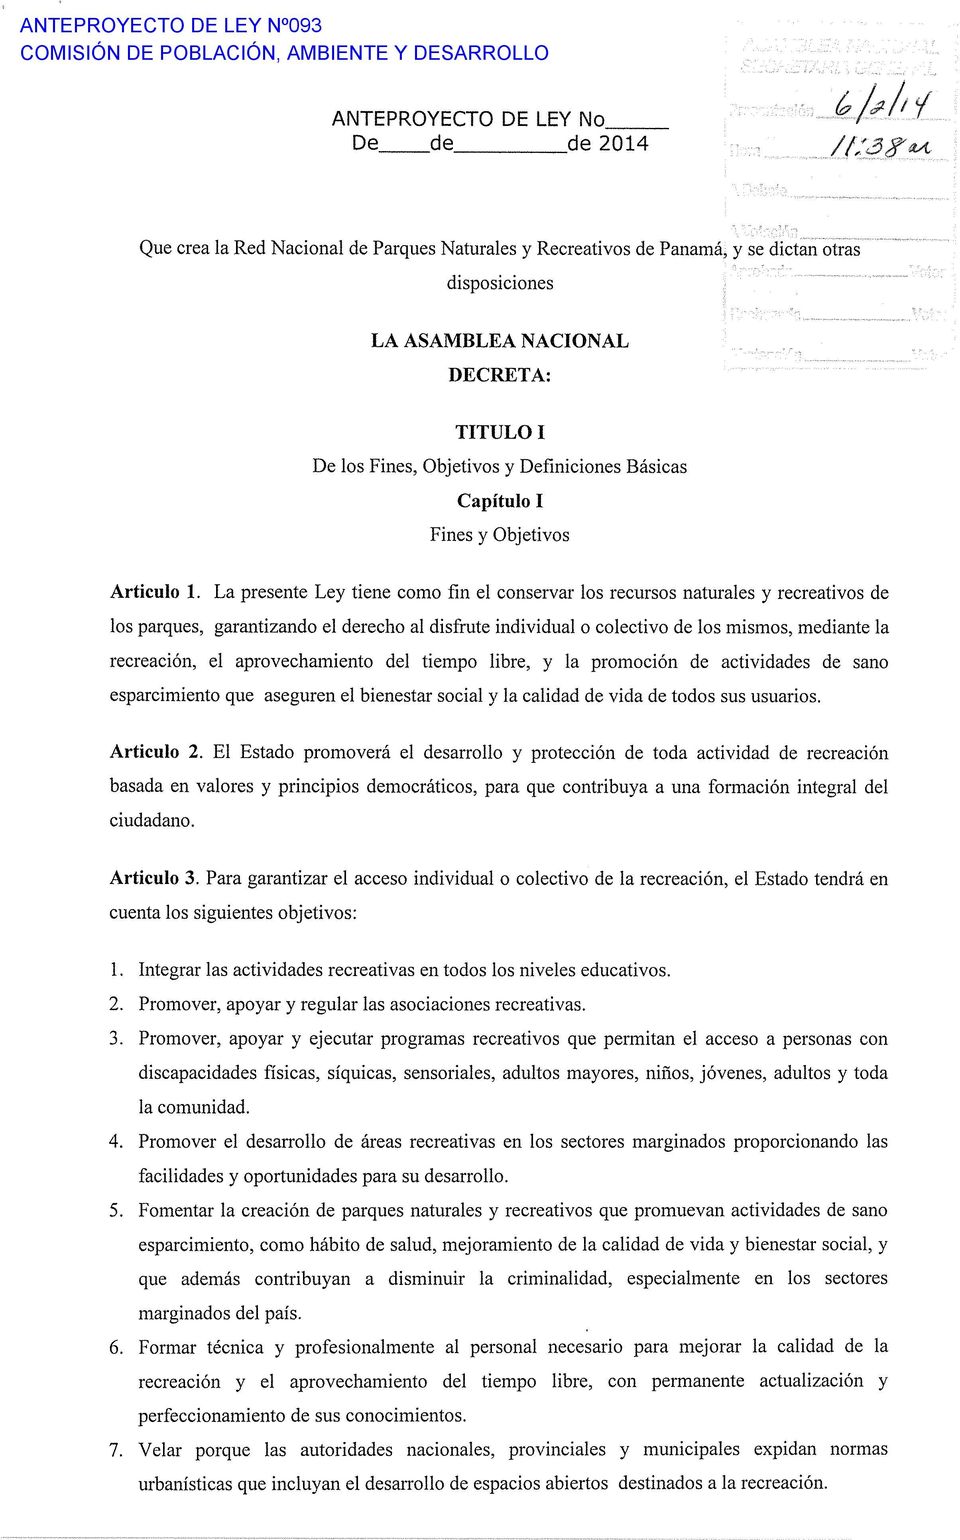 Fines y Objetivos Articulo 1.